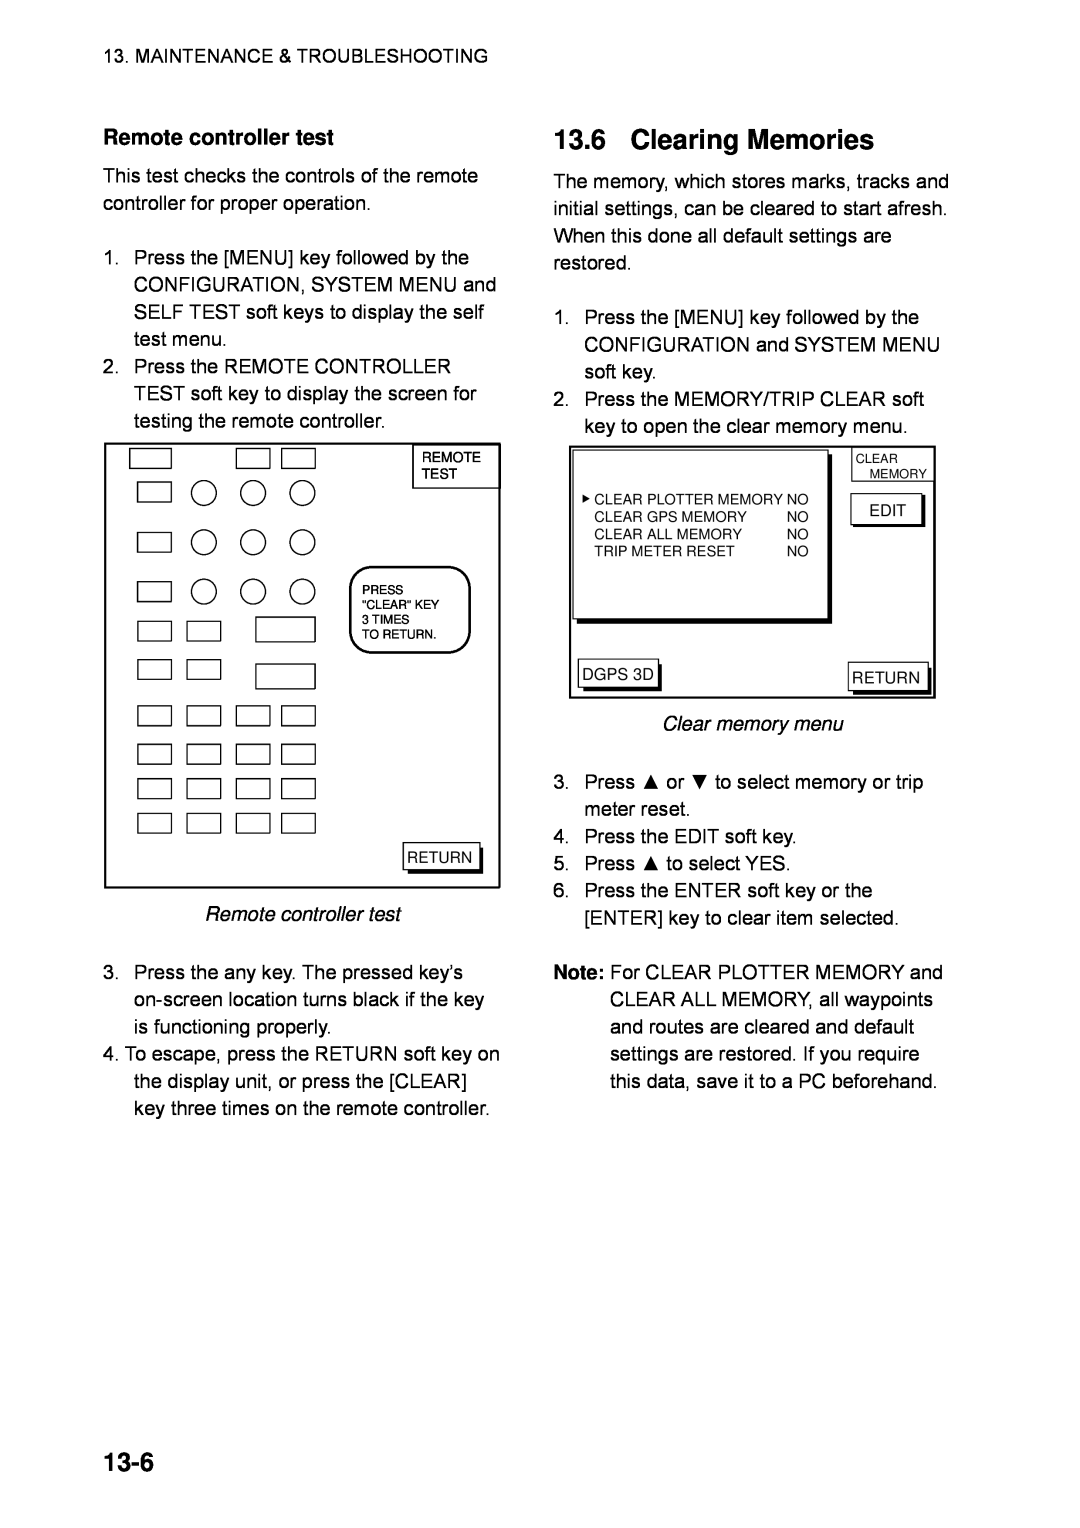 Furuno GP-1850WDF, GP-1850WF manual Clearing Memories, 13-6, Remote controller test, Clear memory menu 